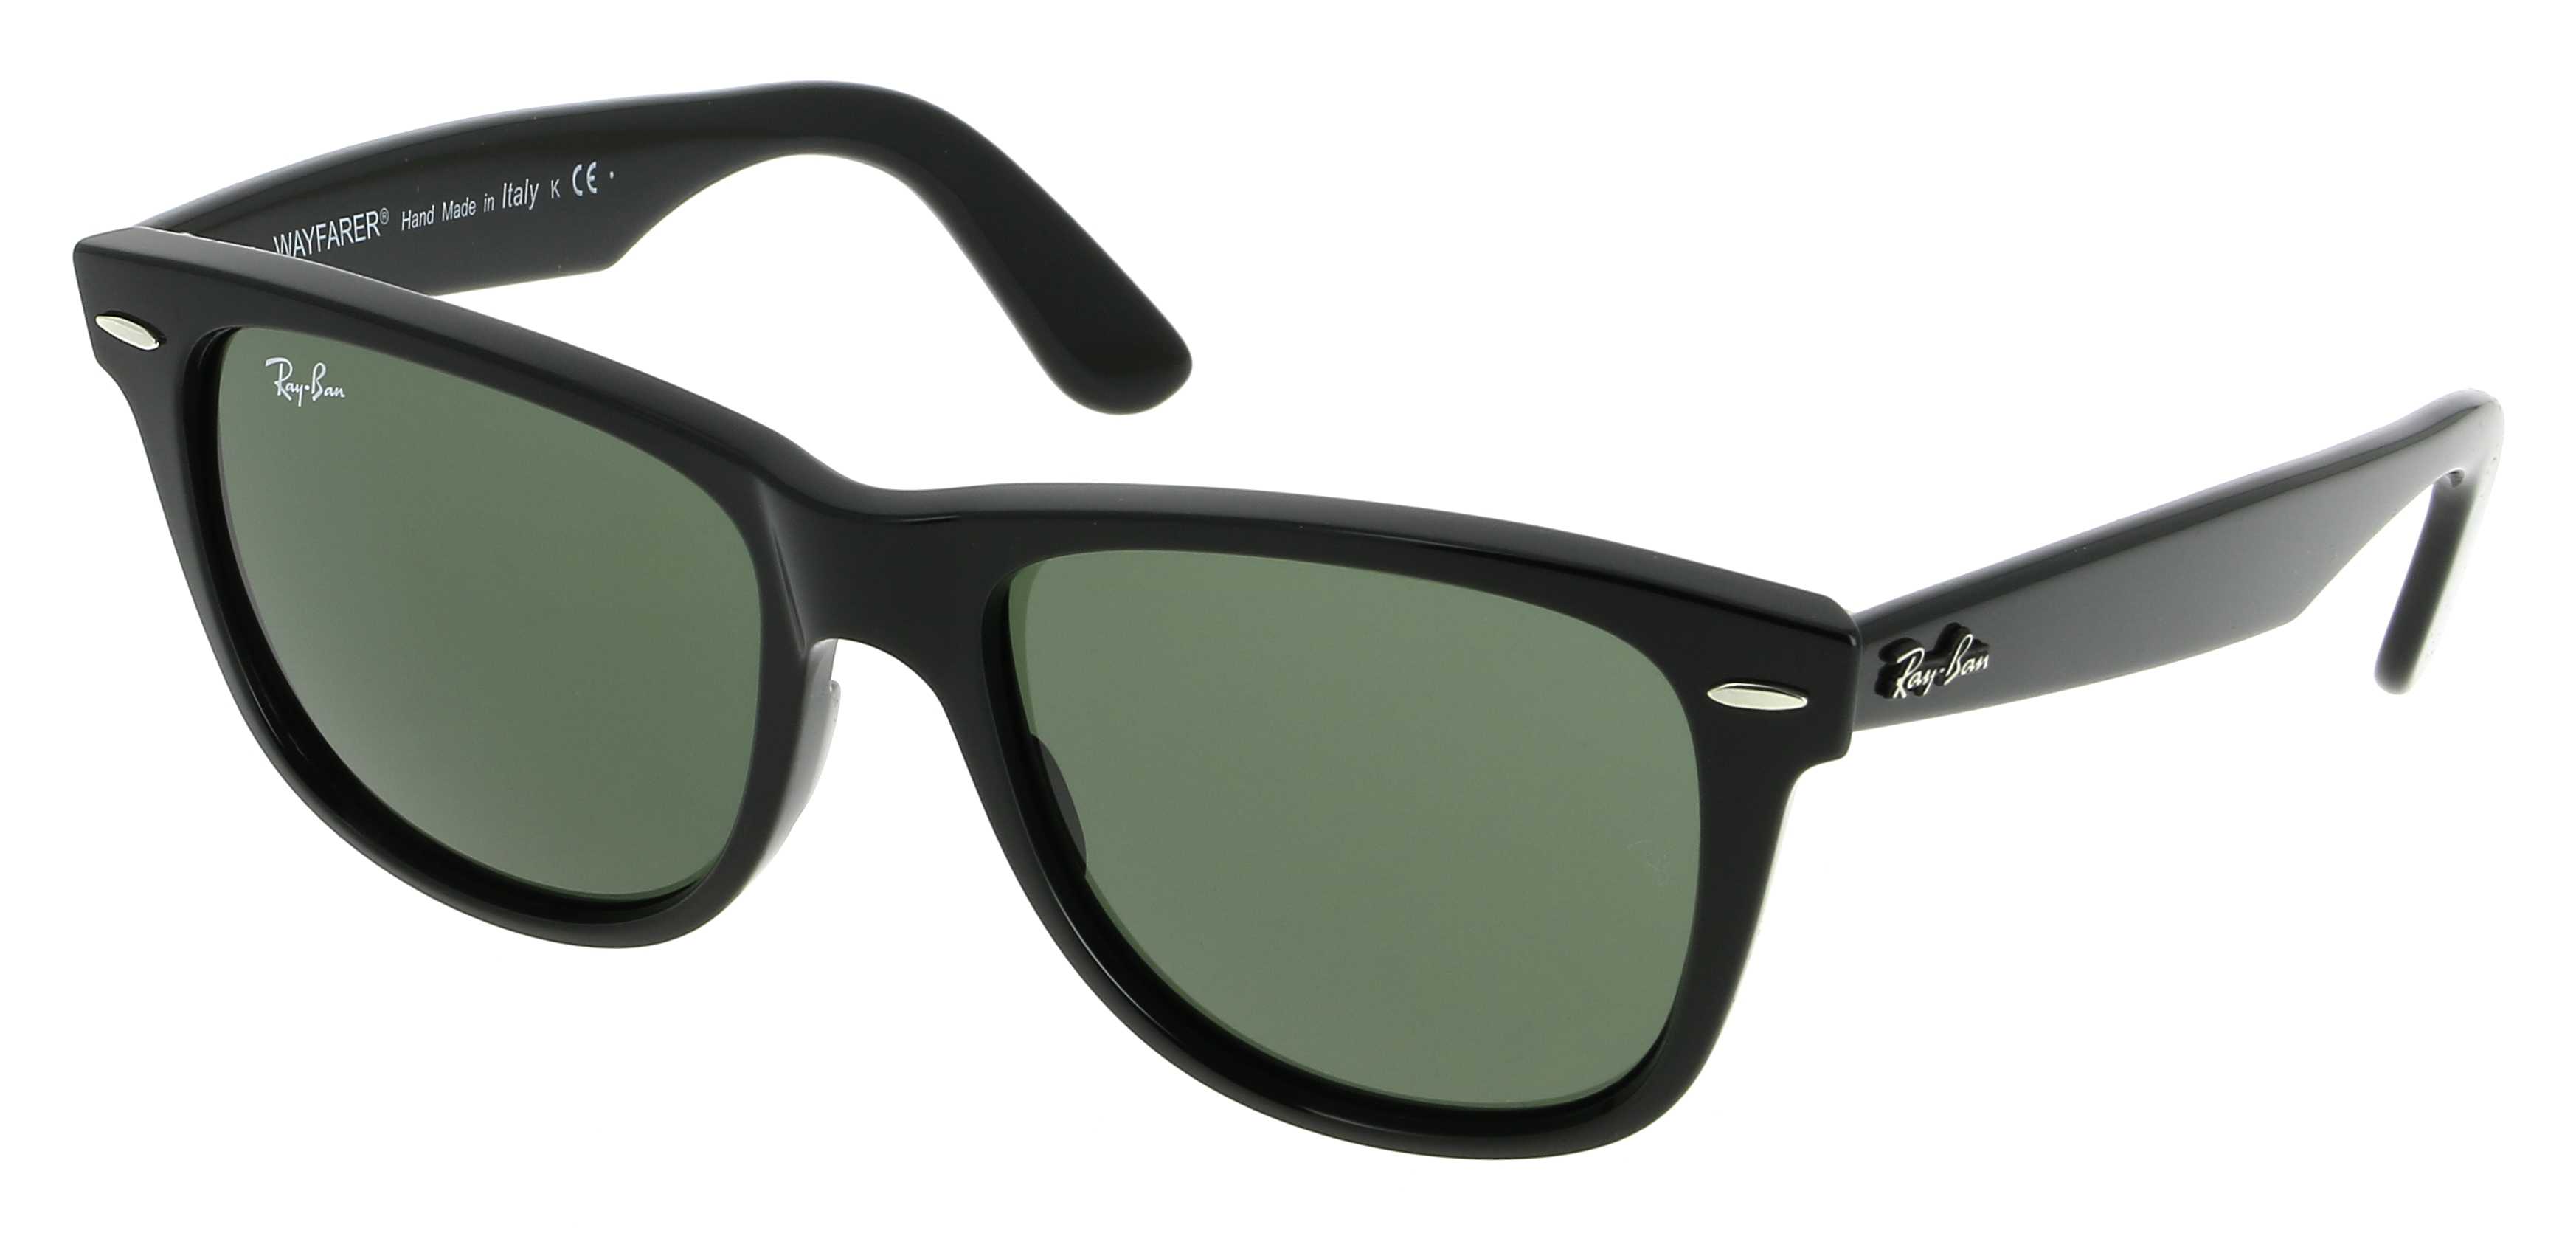 Sunglasses RAY-BAN RB 2140 901 Wayfarer 54/18 Unisex noir Wayfarer frames  Full Frame Glasses Vintage 54mmx18mm 133$CA